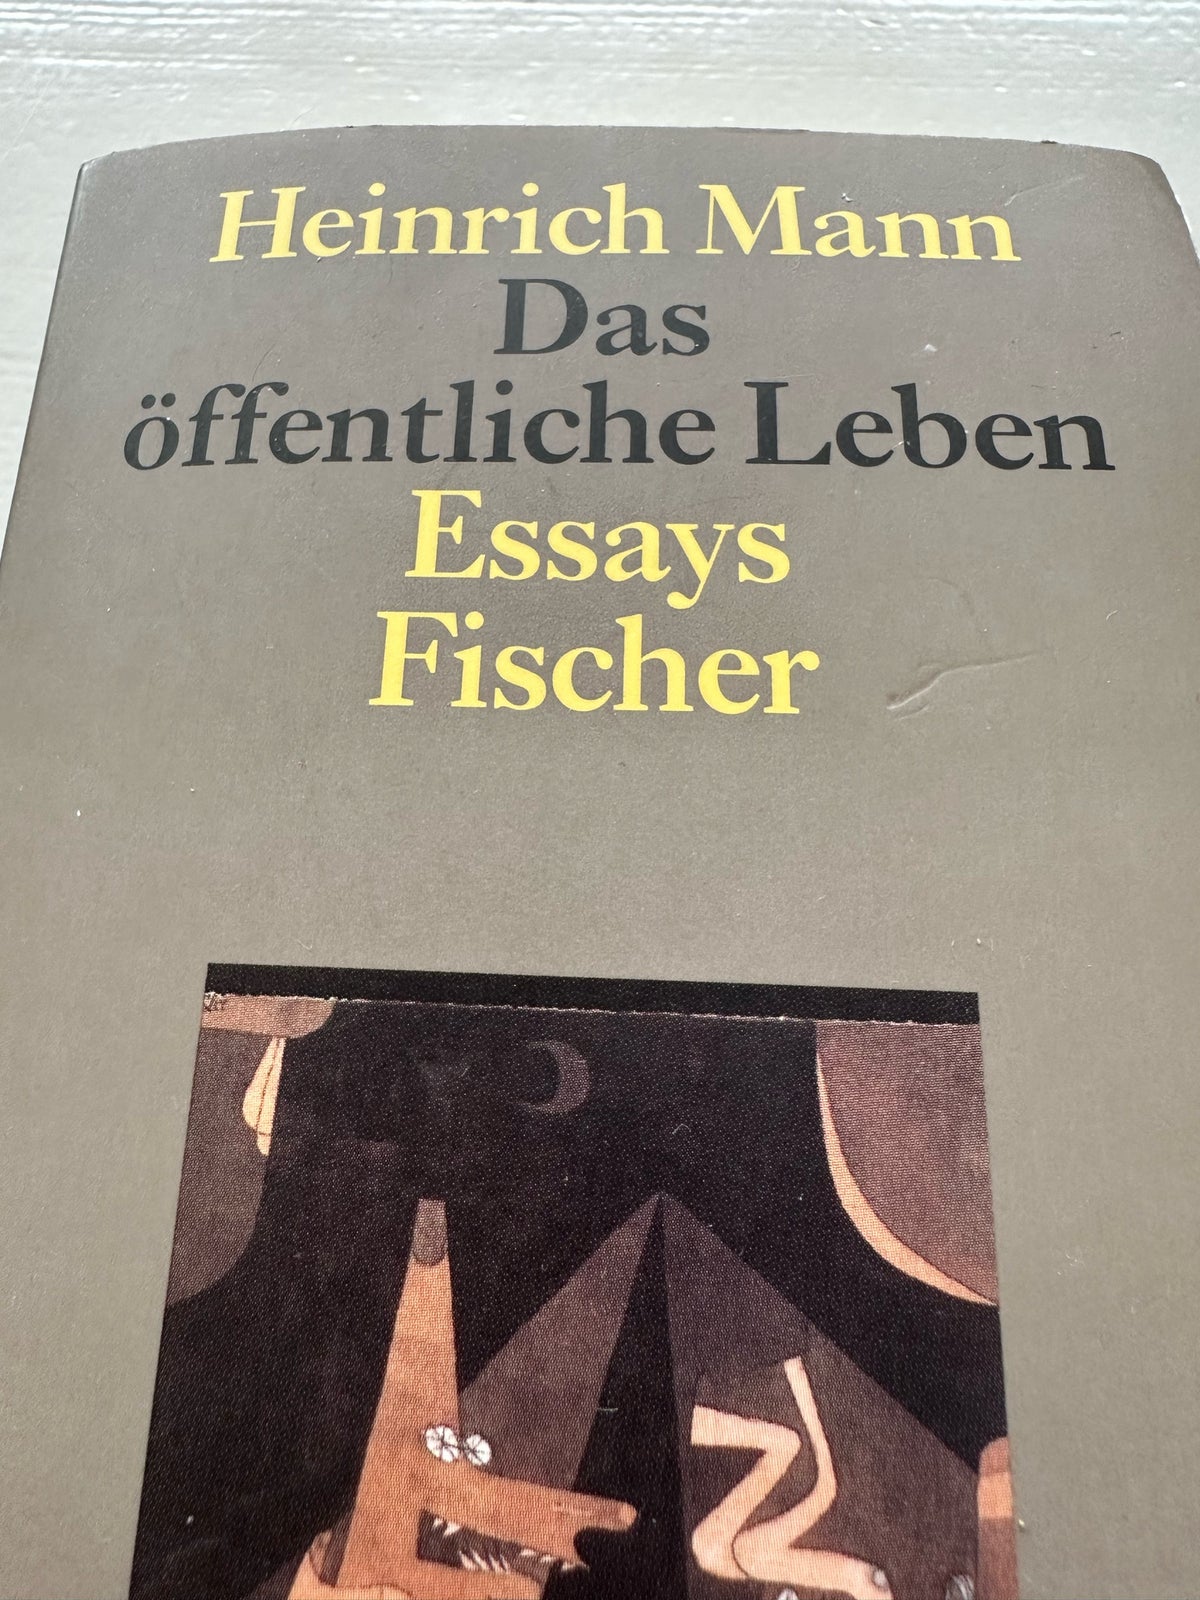 Essays, Fischer, år 2000